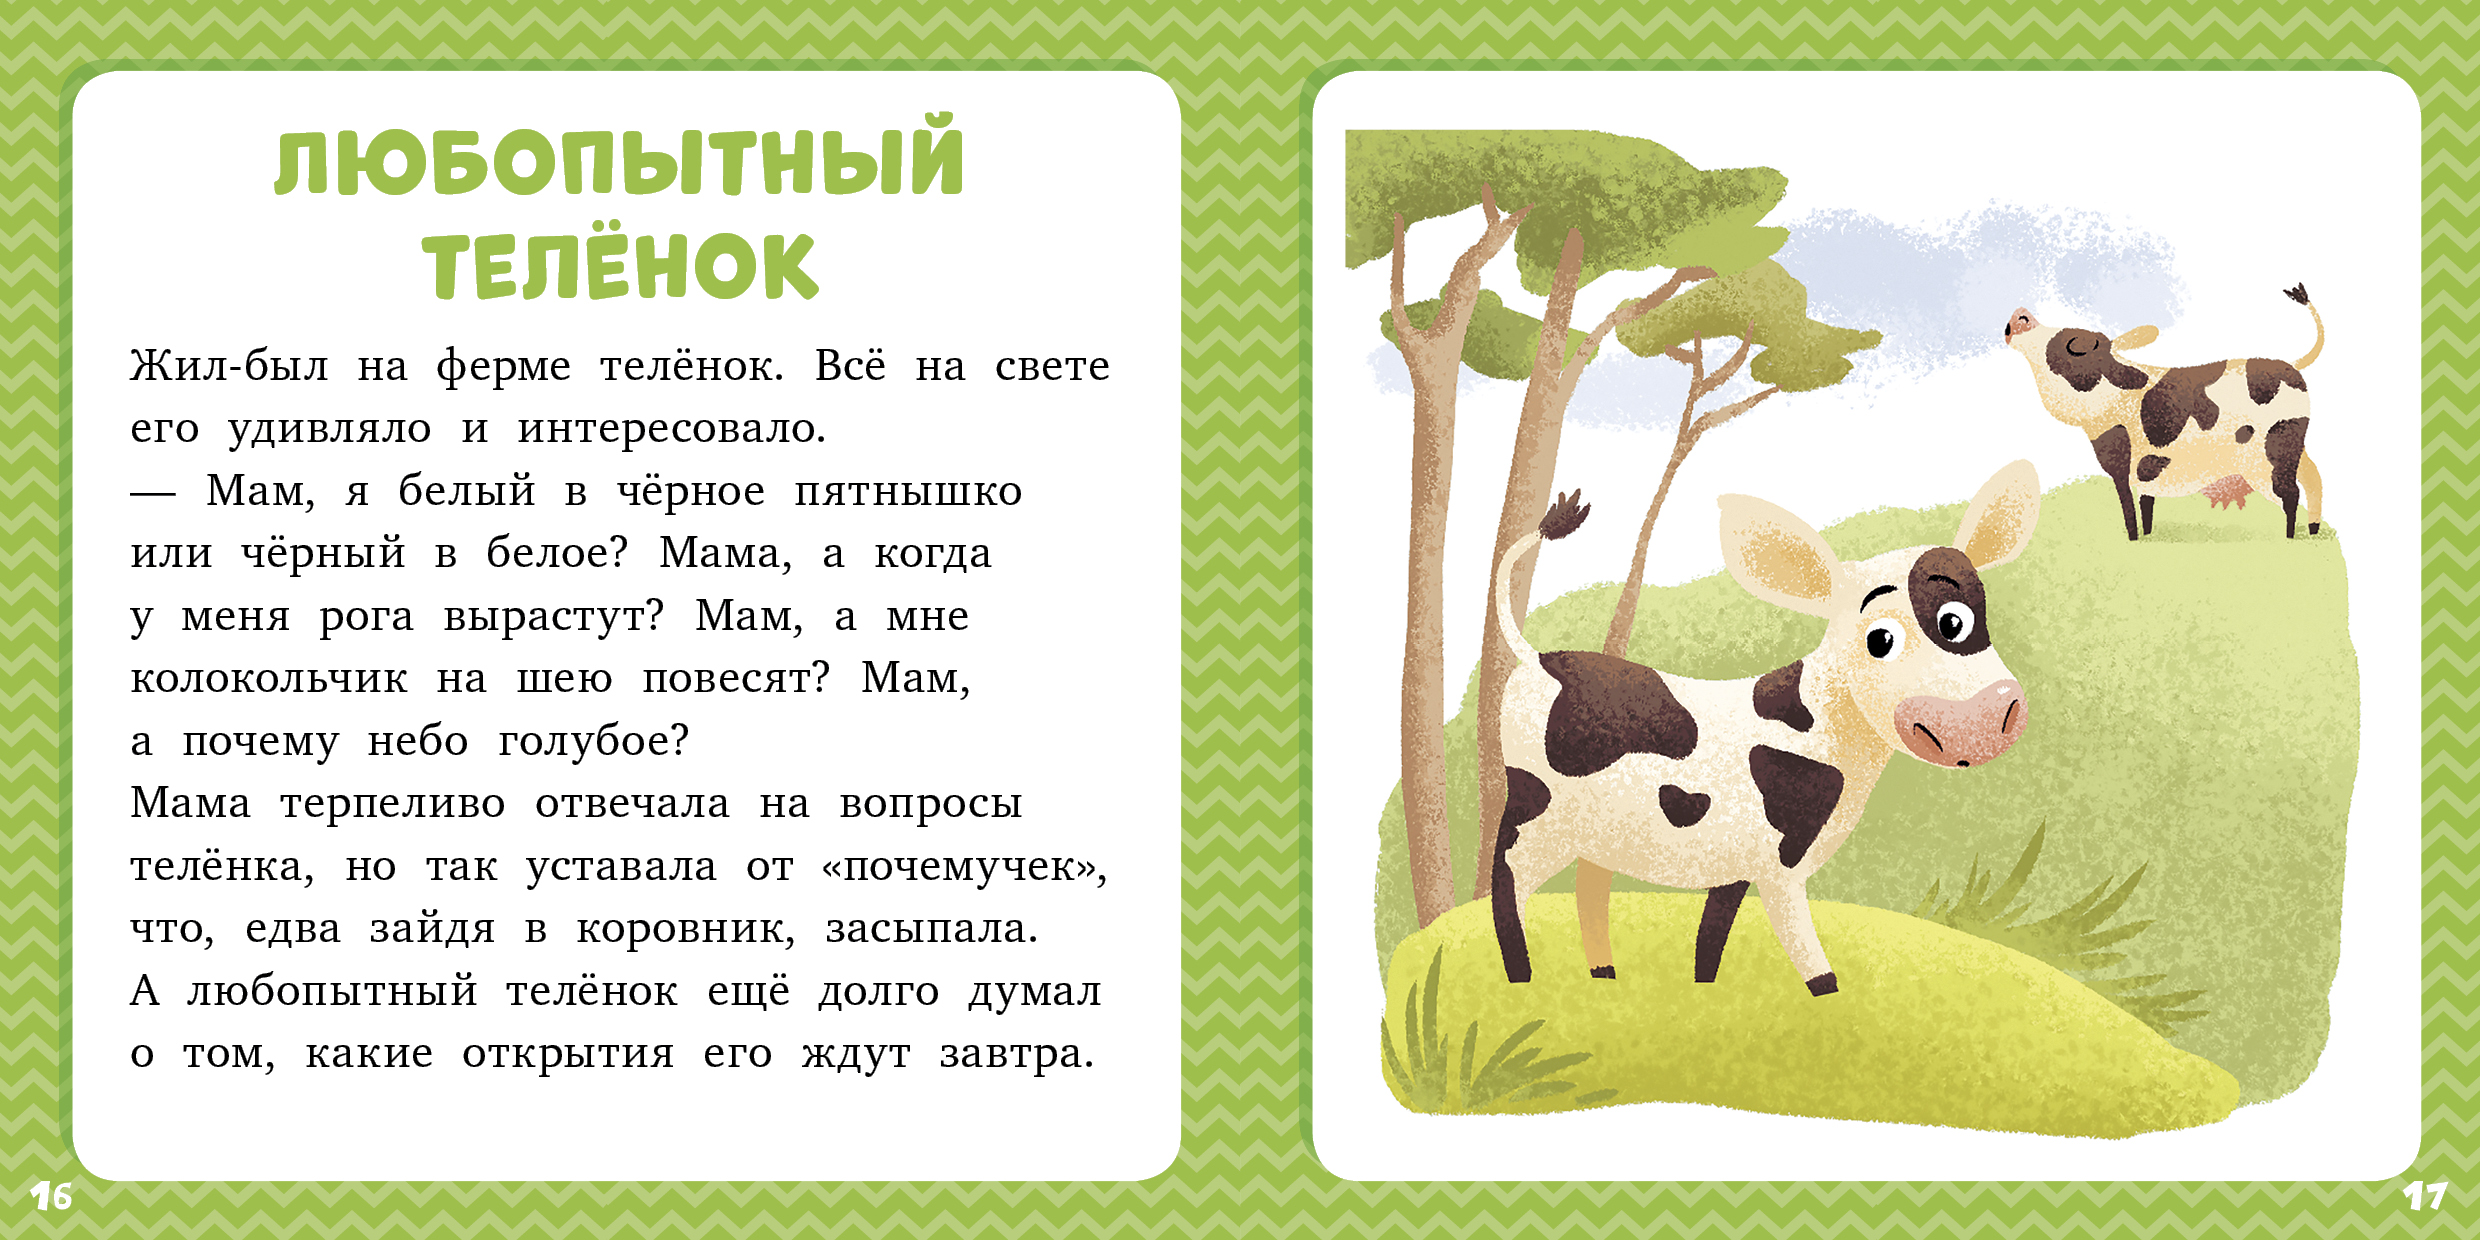 Короткие сказки для детей слушать онлайн: Русские народные сказки слушать онлайн и скачать